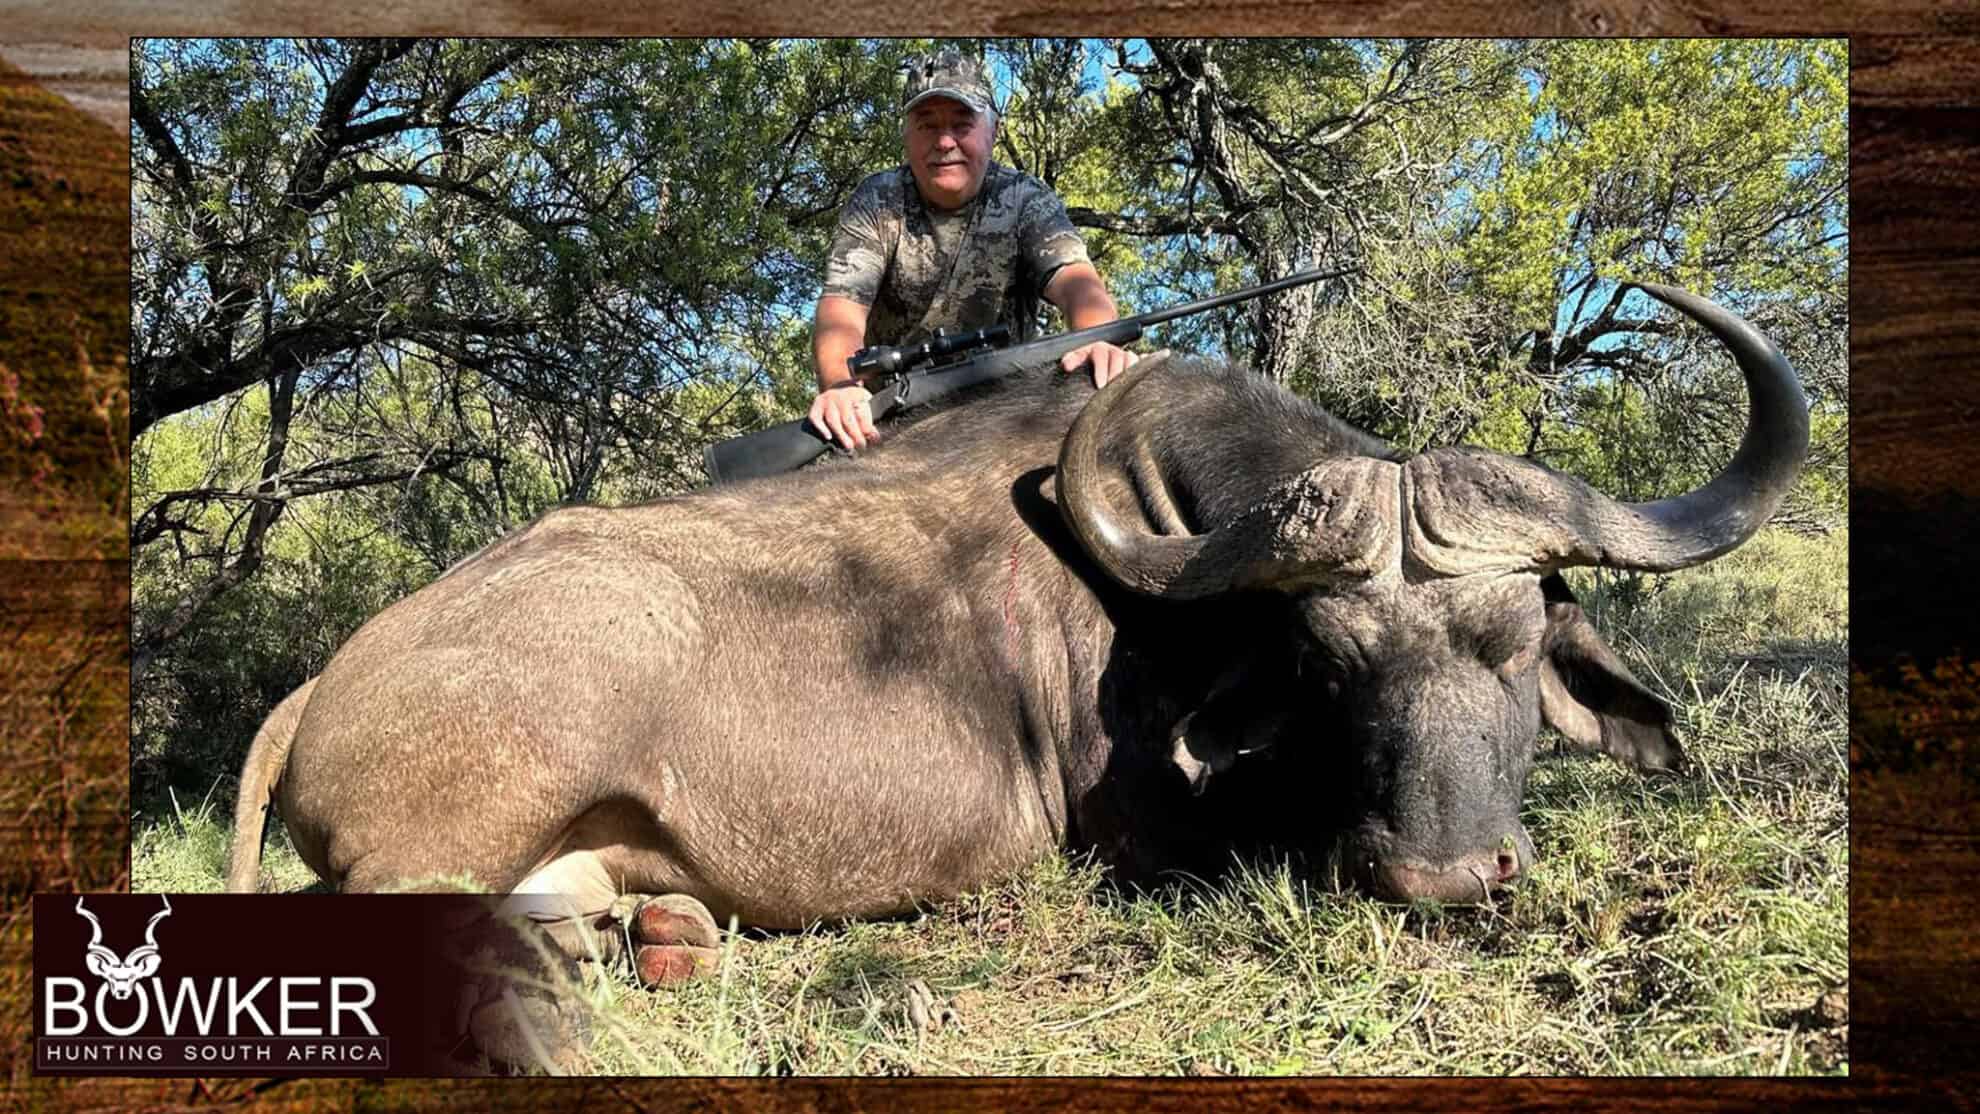 Cape Buffalo hunts with Nick Bowker